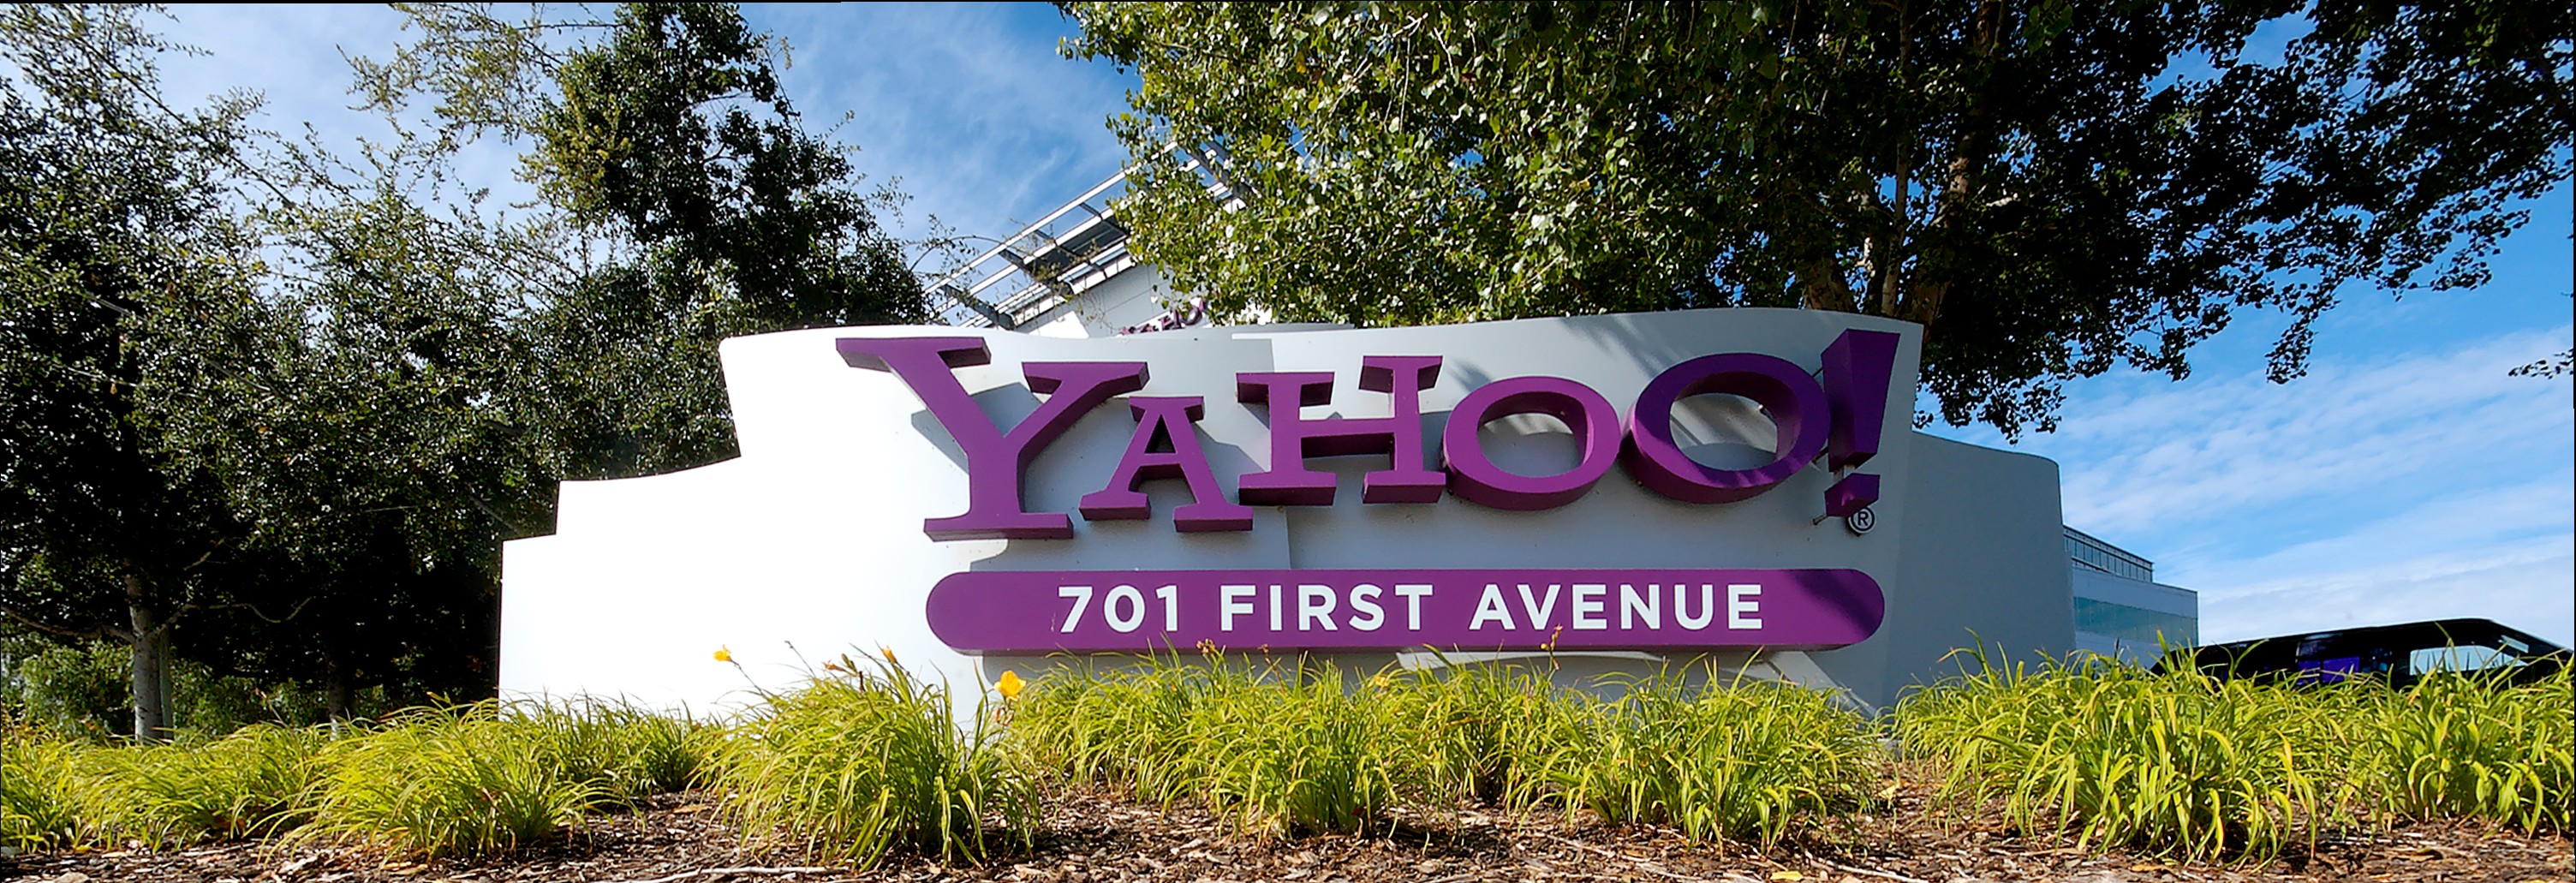 Yahoo - muss das Schild bald ausgetauscht werden? (CC BY-SA)